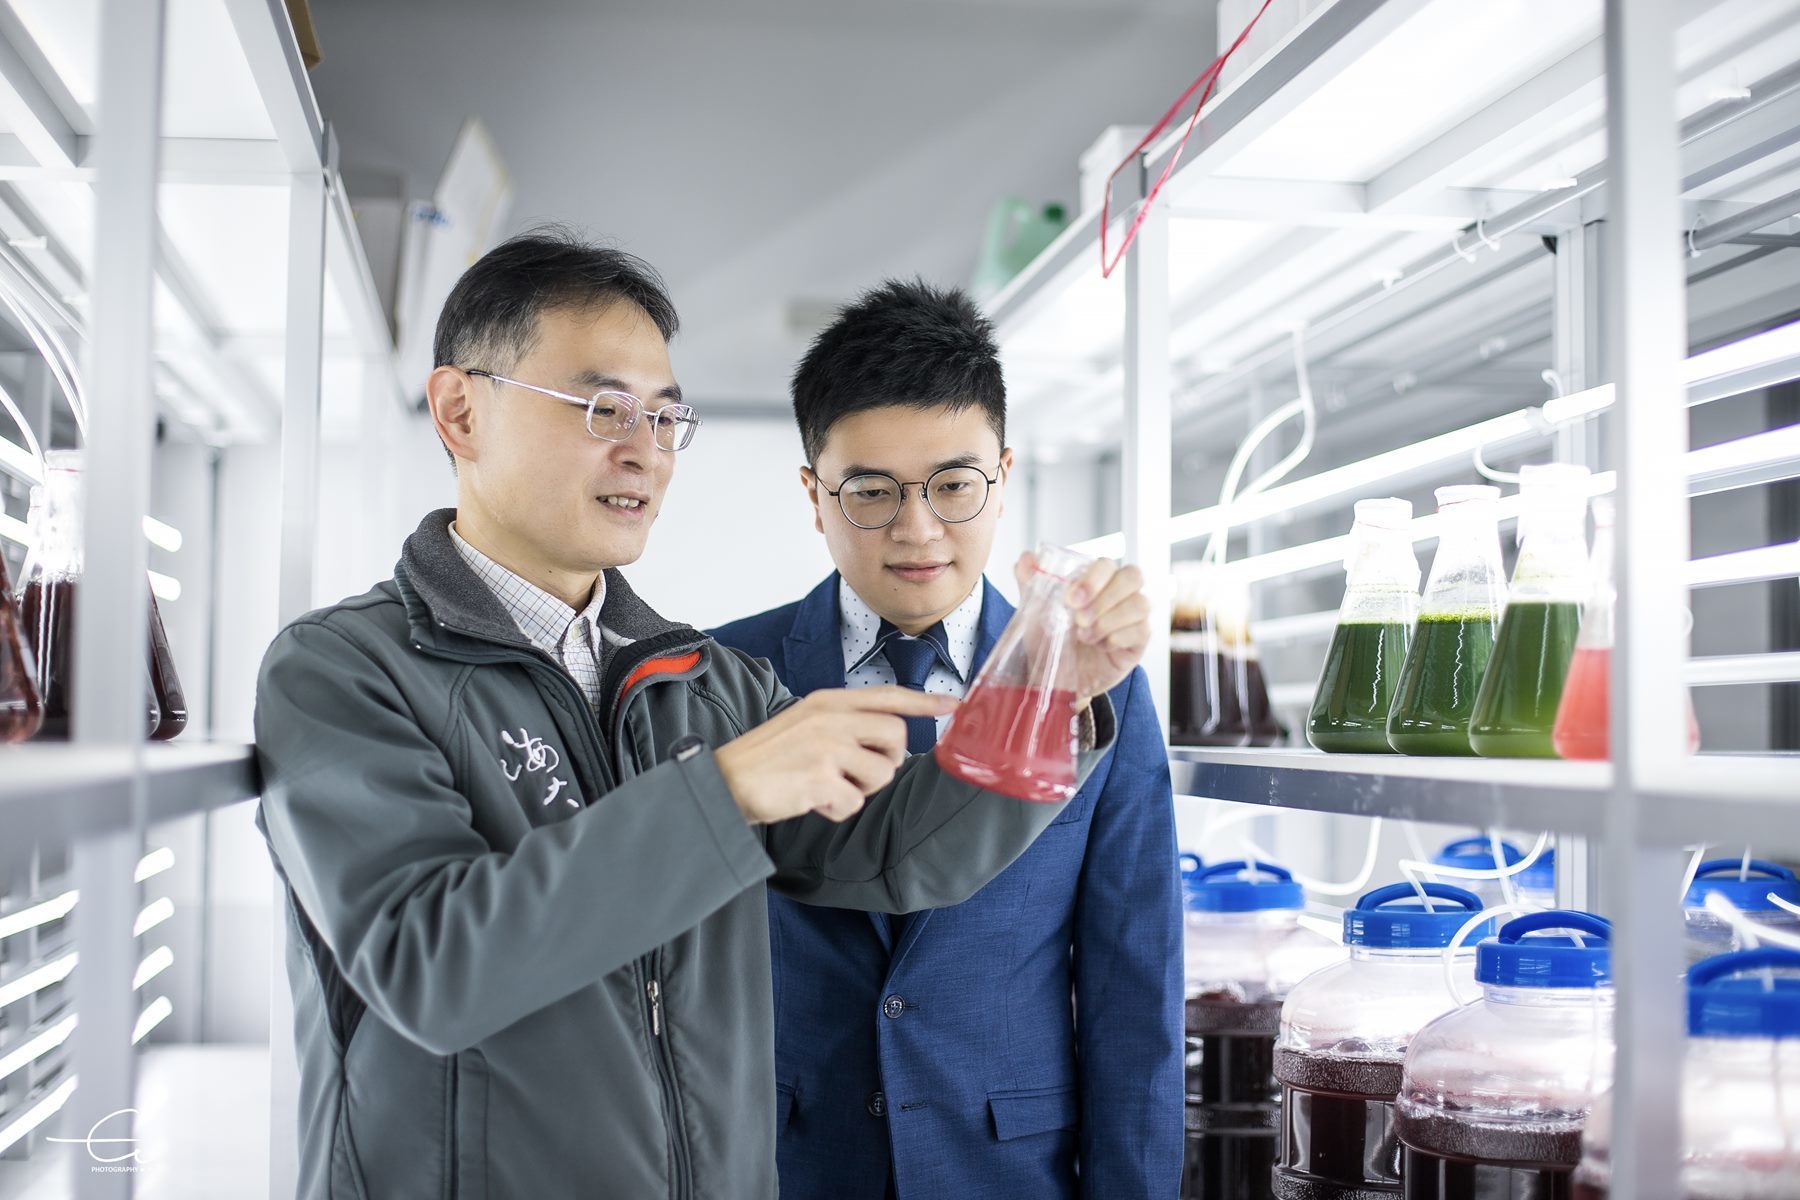 海大李孟洲教授臺灣寄絲藻研究 碳捕捉、高經濟價值具永續發展潛力